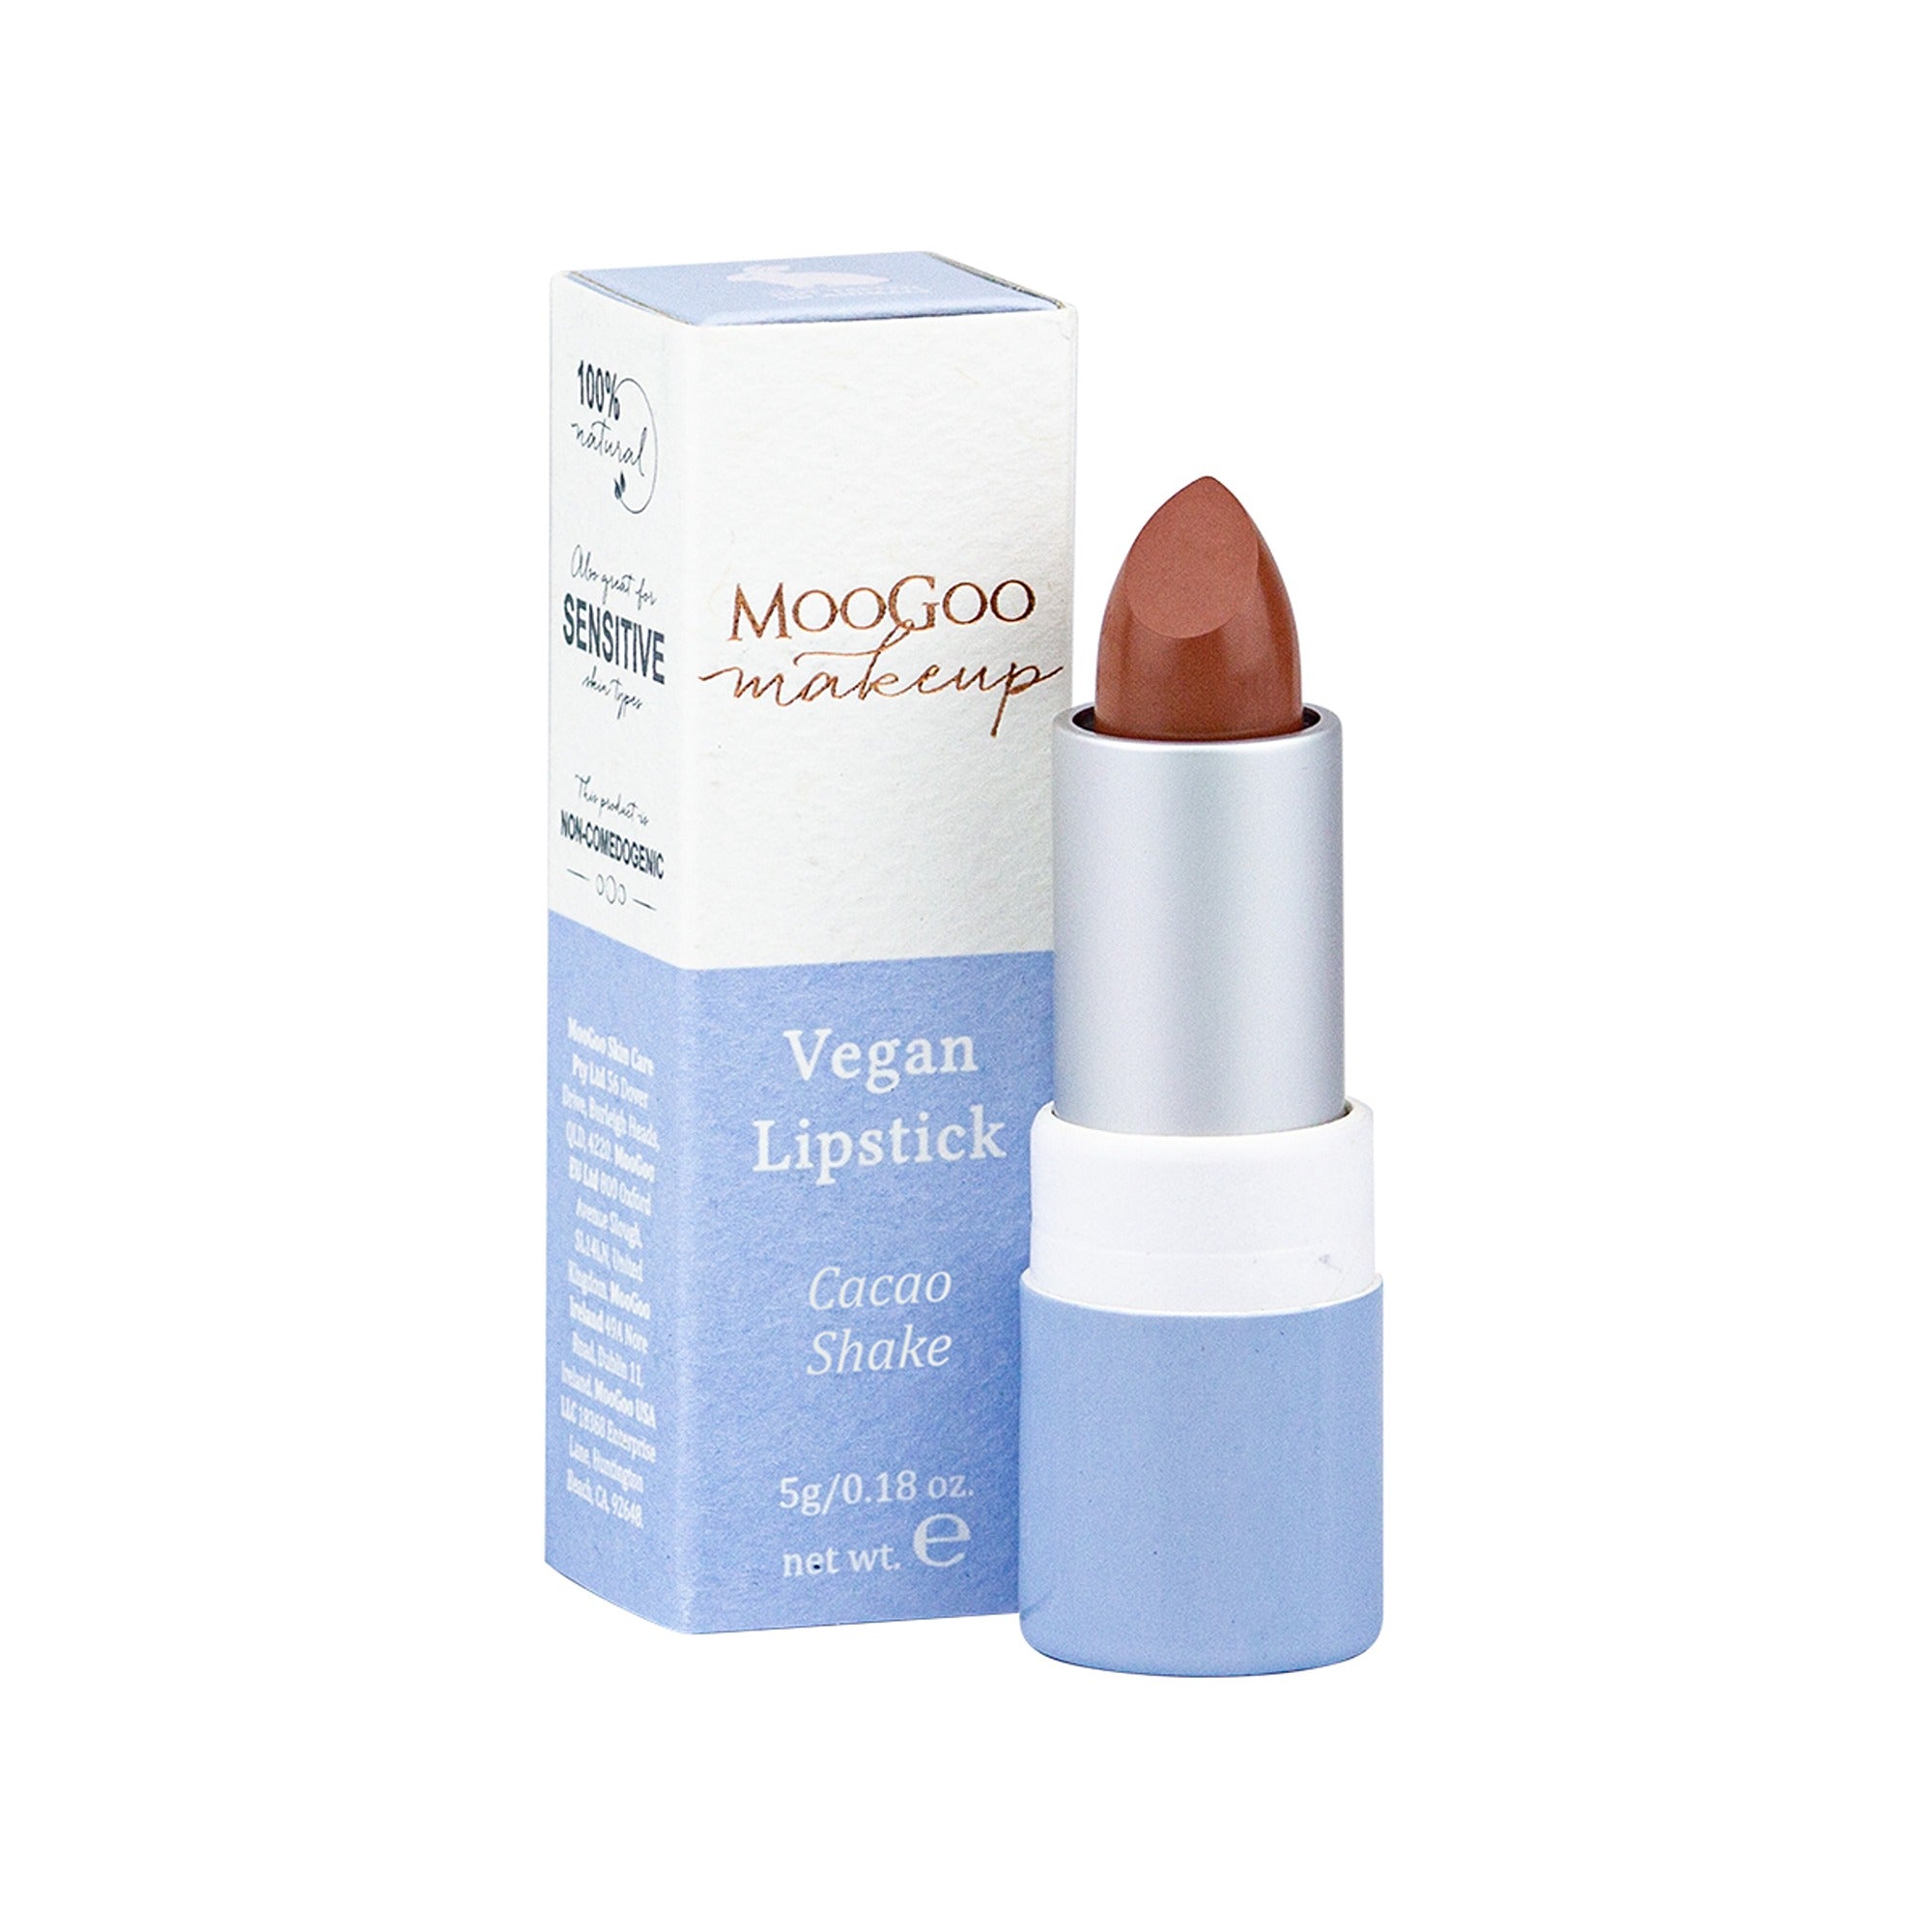 Moogoo Vegan Lipstick 5g - Cacao Shake